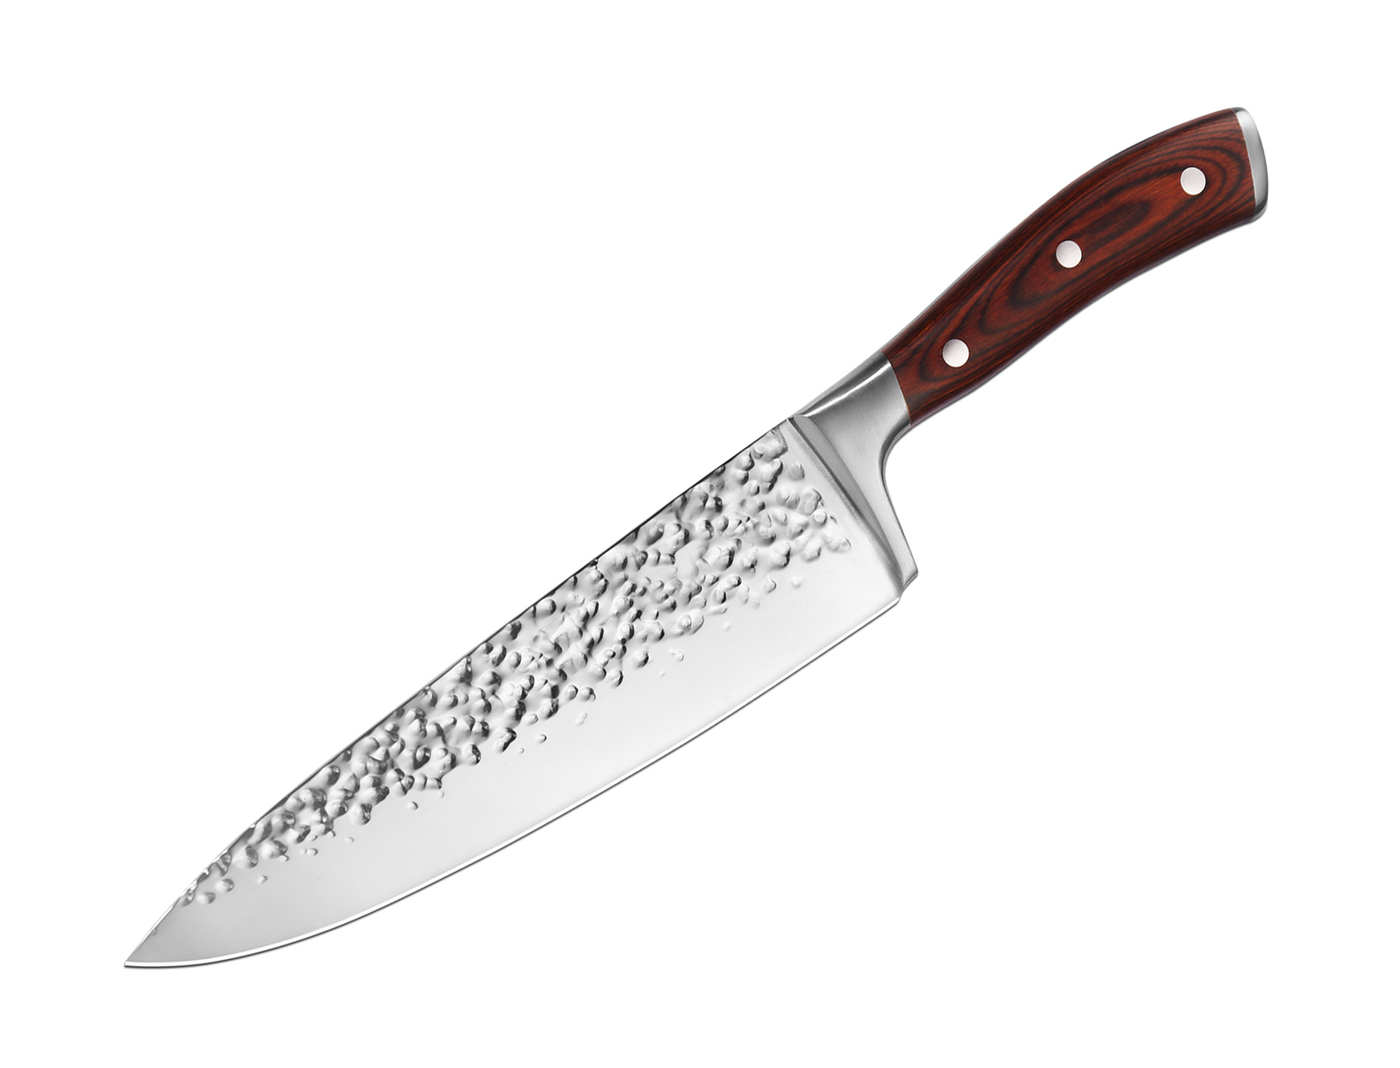 Кухонный универсальный нож Tuotown R-5228, рукоять дерево